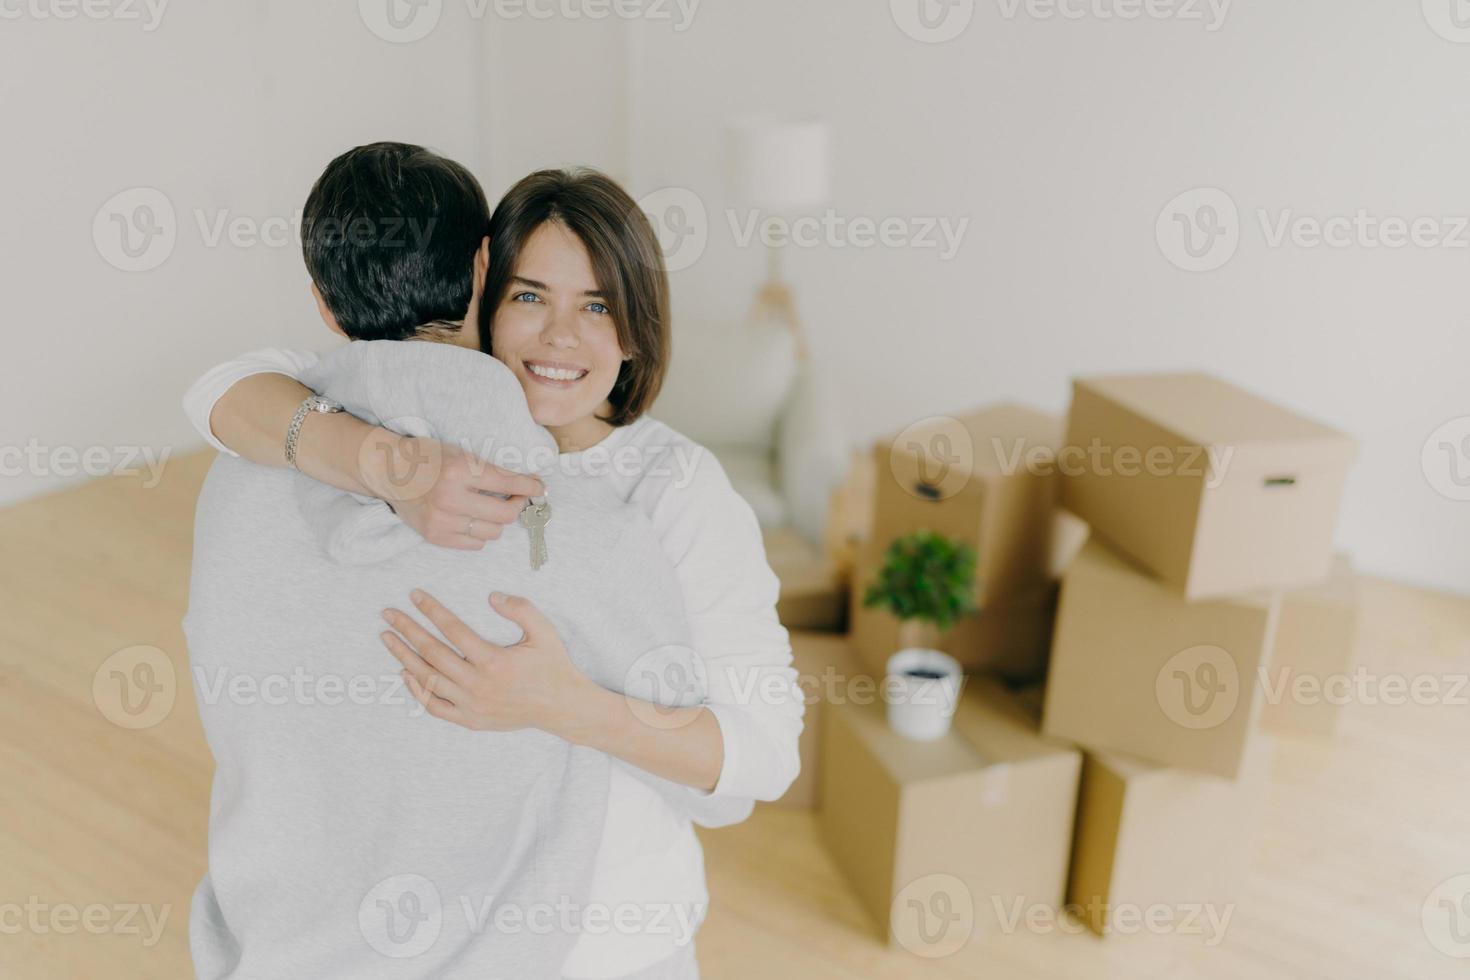 foto interna de um adorável casal de família abraçado com amor, segura as chaves do novo apartamento, muda-se para o próprio apartamento, posa na sala de estar vazia com luminária de chão e pilha de muitos recipientes de papelão